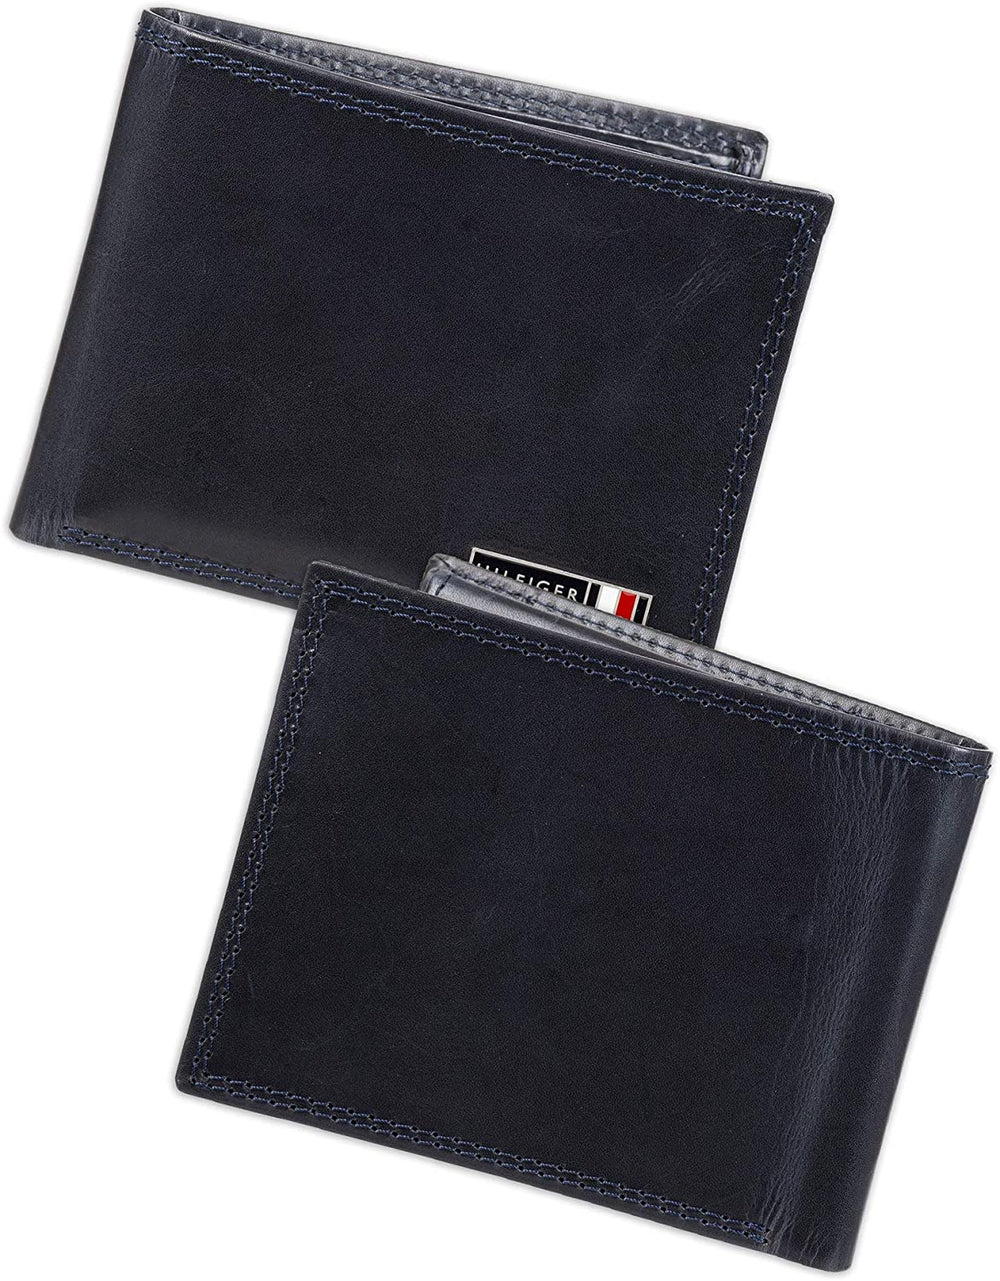 Tommy Hilfiger Men's 31TL140002 Leather Wallet – Slim Bifold Navy - 3alababak